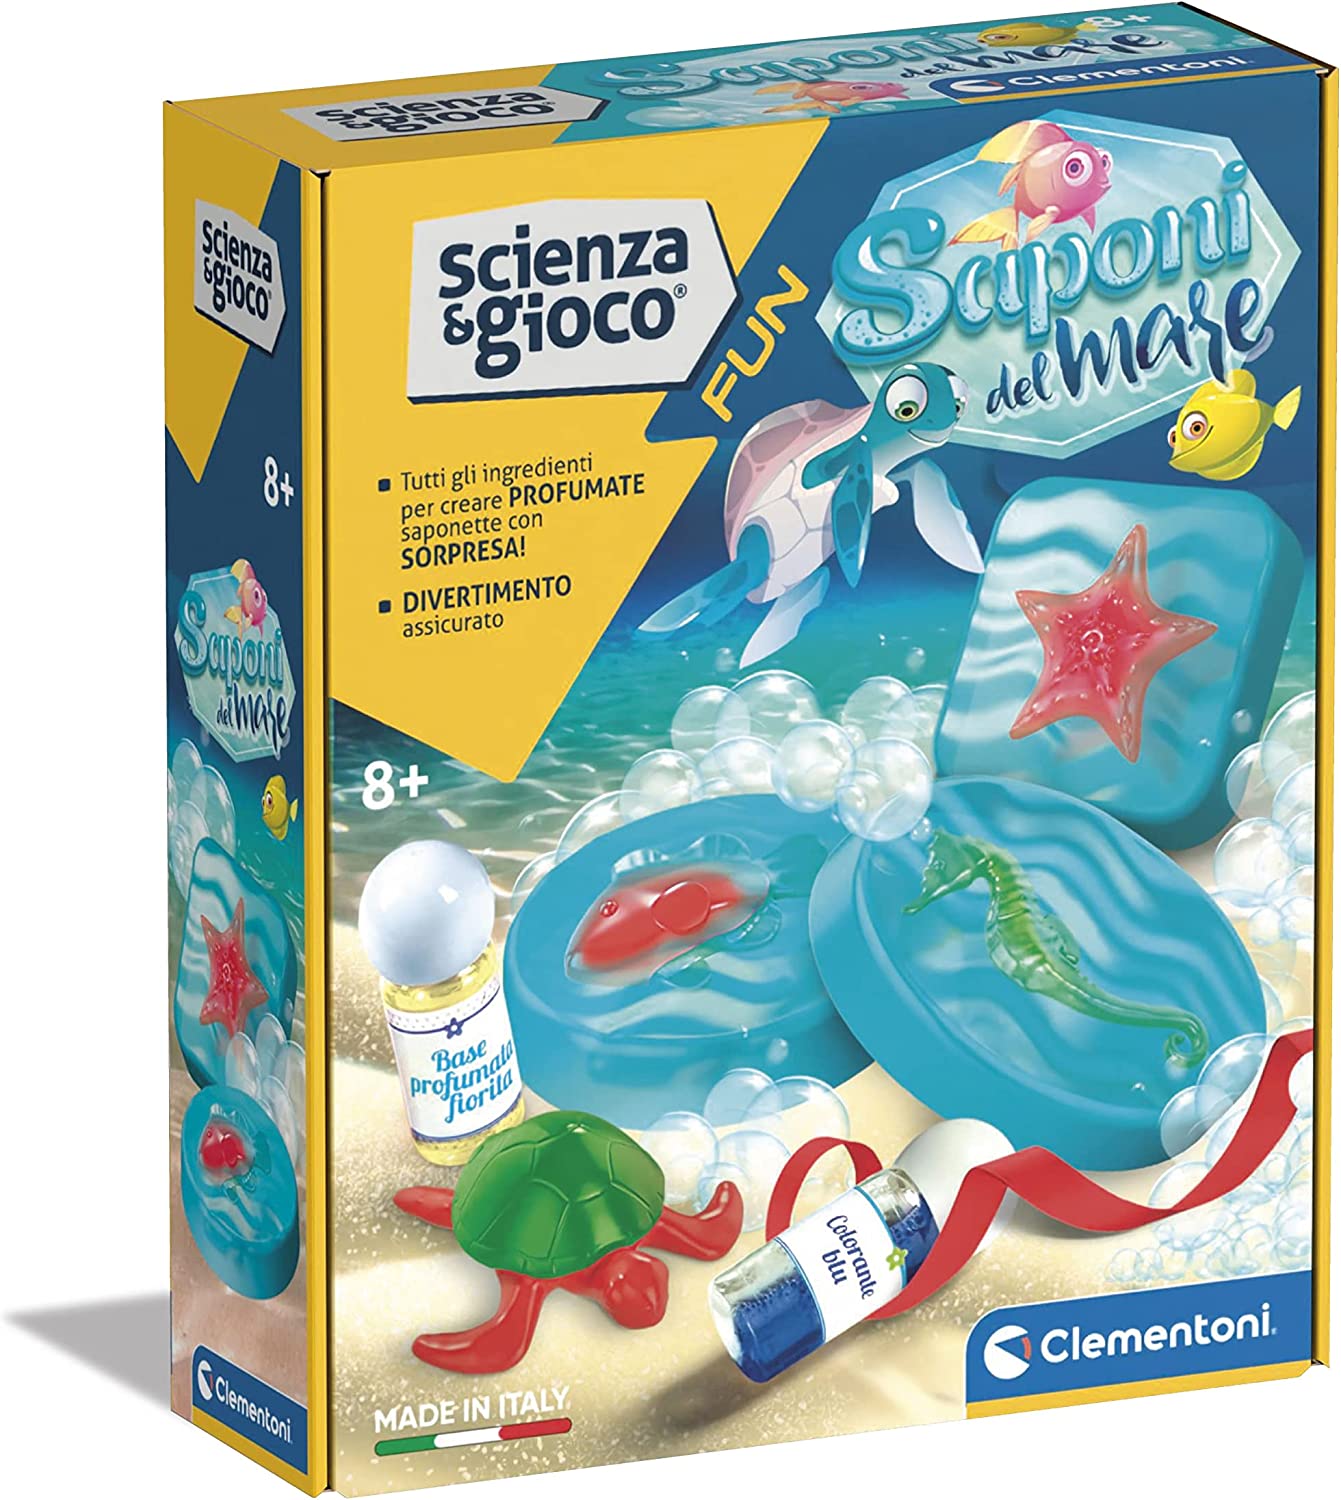 Clementoni Fun - Sea Soaps - Laboratorio saponi, Kit di Scienza per Creare saponette  profumate, esperimenti, Gioco scientifico 